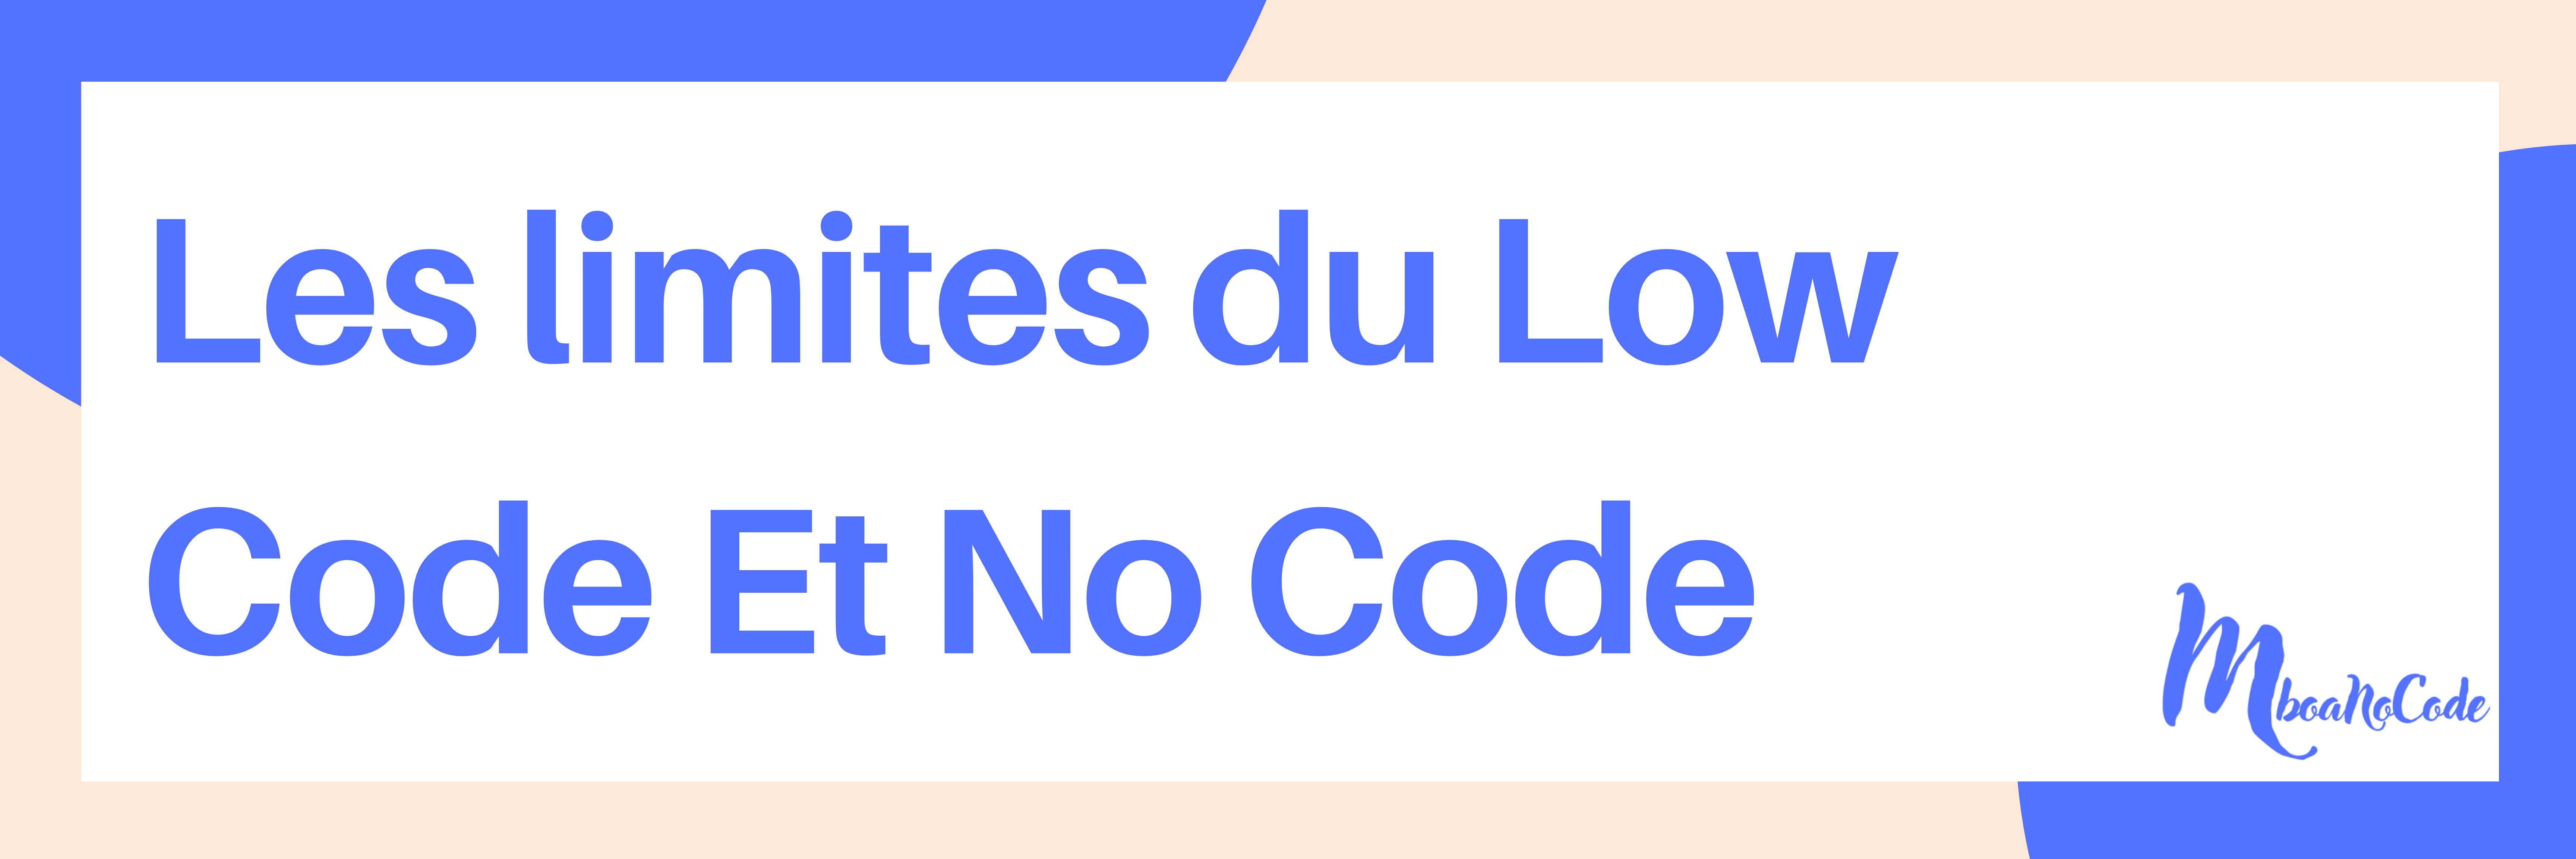 limites du low code et no code